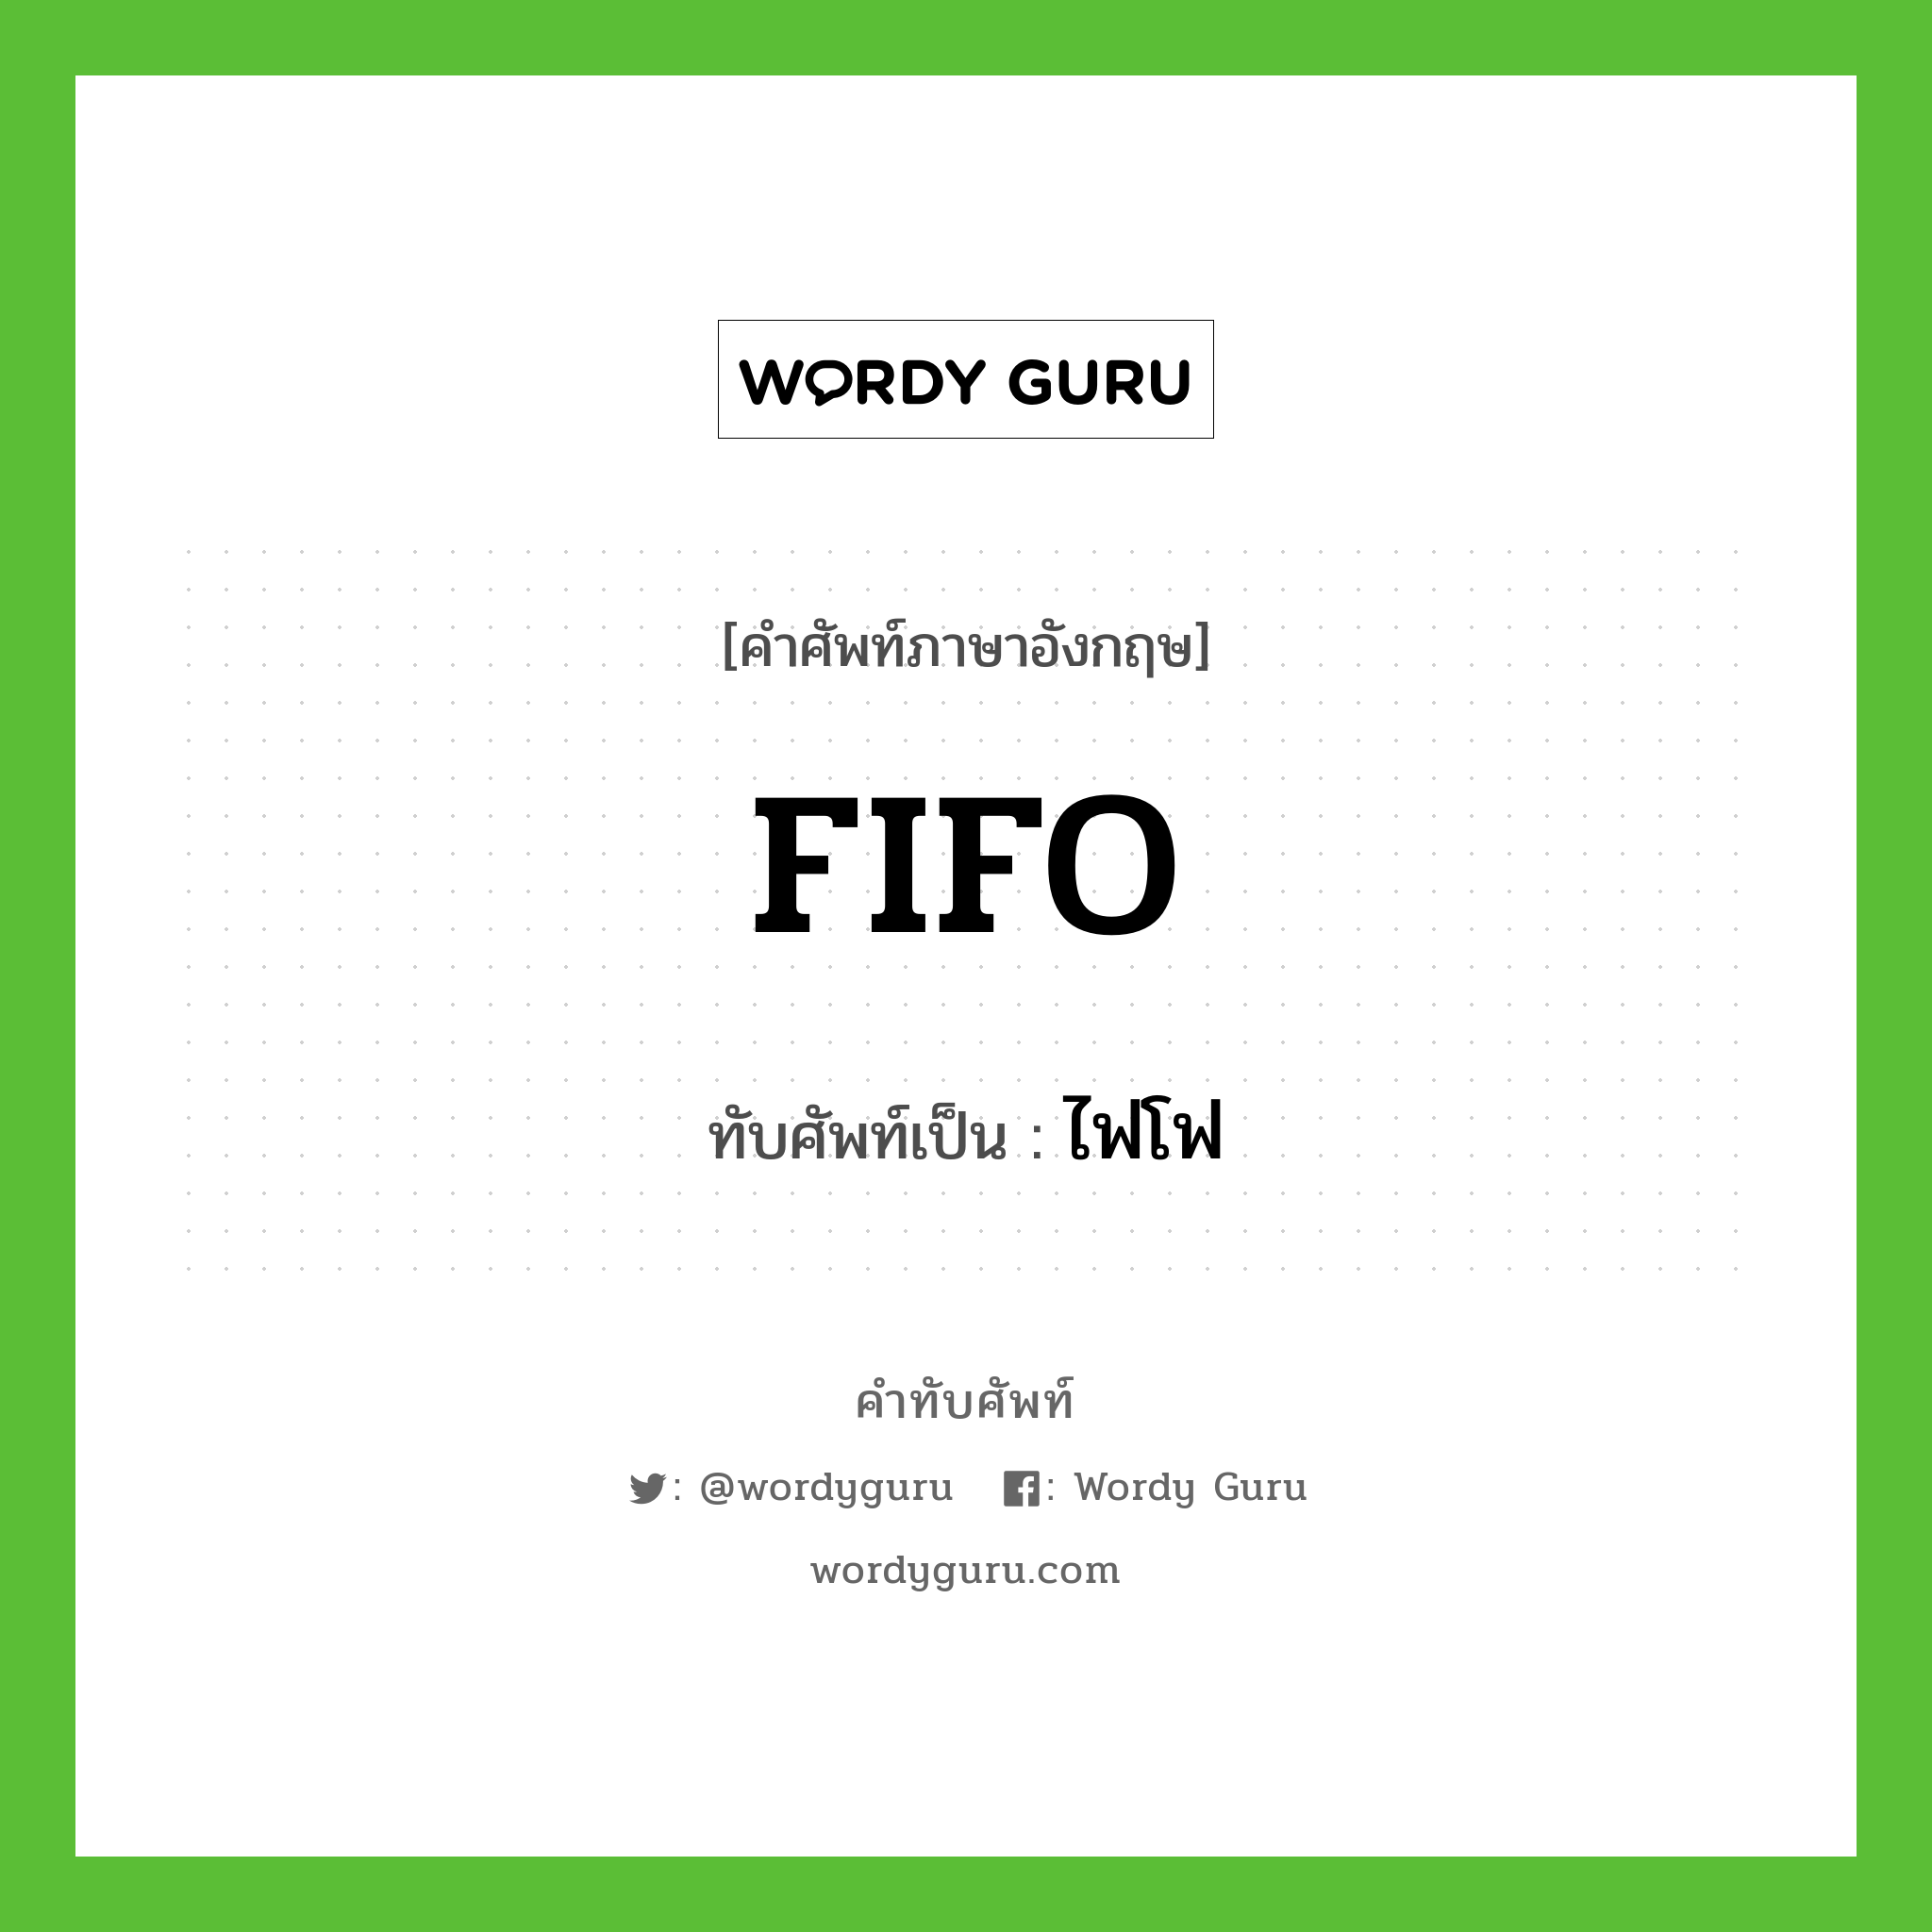 FIFO เขียนเป็นคำไทยว่าอะไร?, คำศัพท์ภาษาอังกฤษ FIFO ทับศัพท์เป็น ไฟโฟ